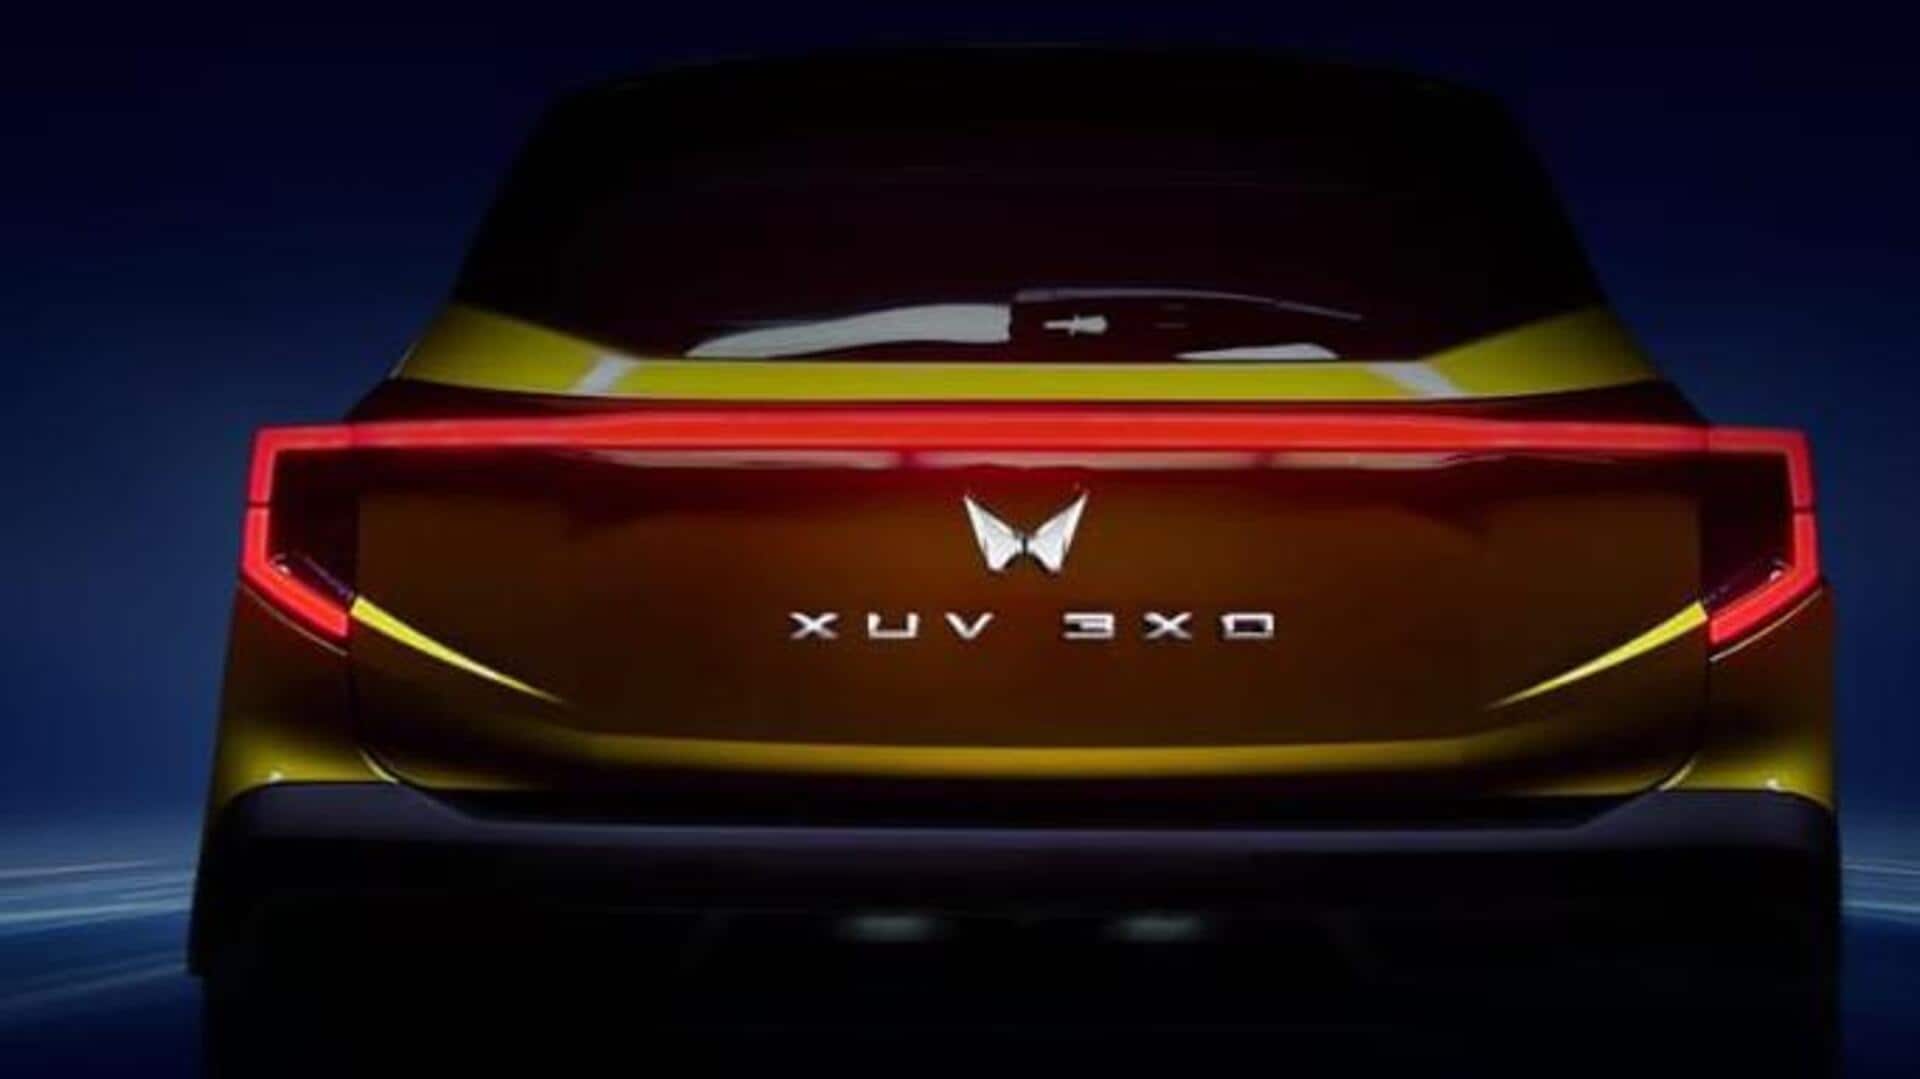 महिंद्रा XUV3XO 29 अप्रैल को होगी लॉन्च, कंपनी ने जारी किया टीजर